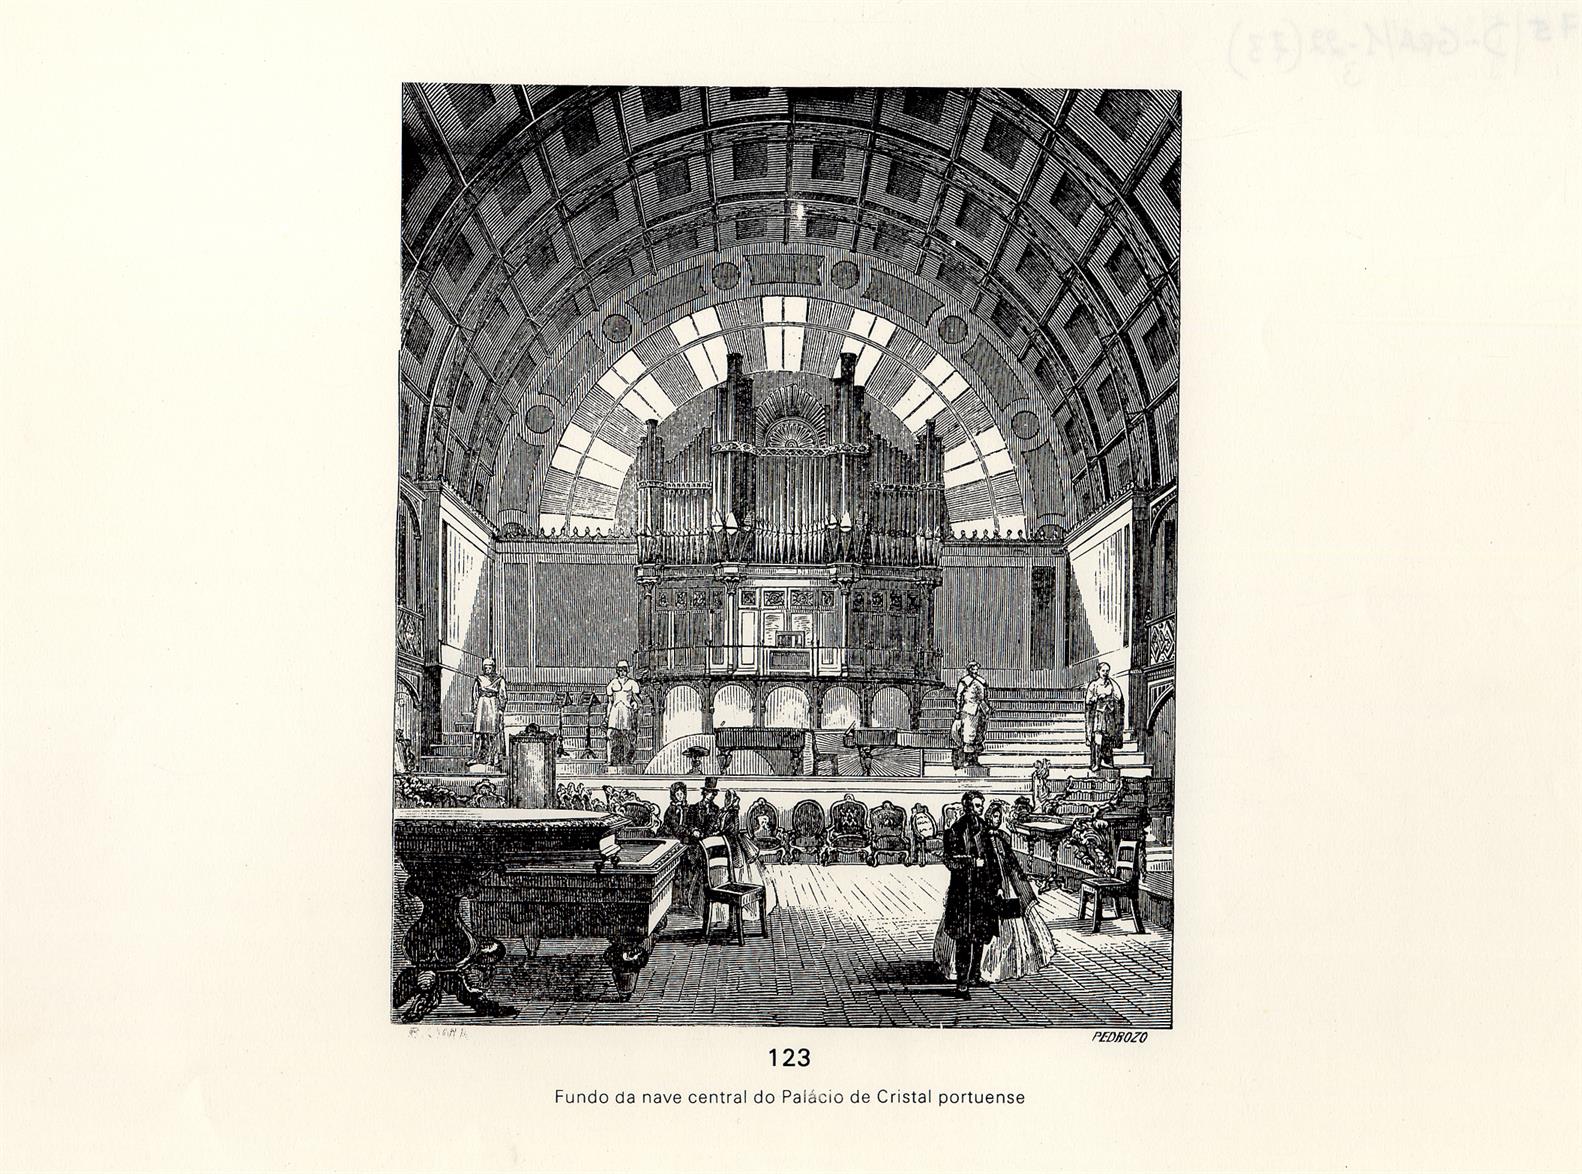 Fundo da nave central do Palácio de Cristal portuense